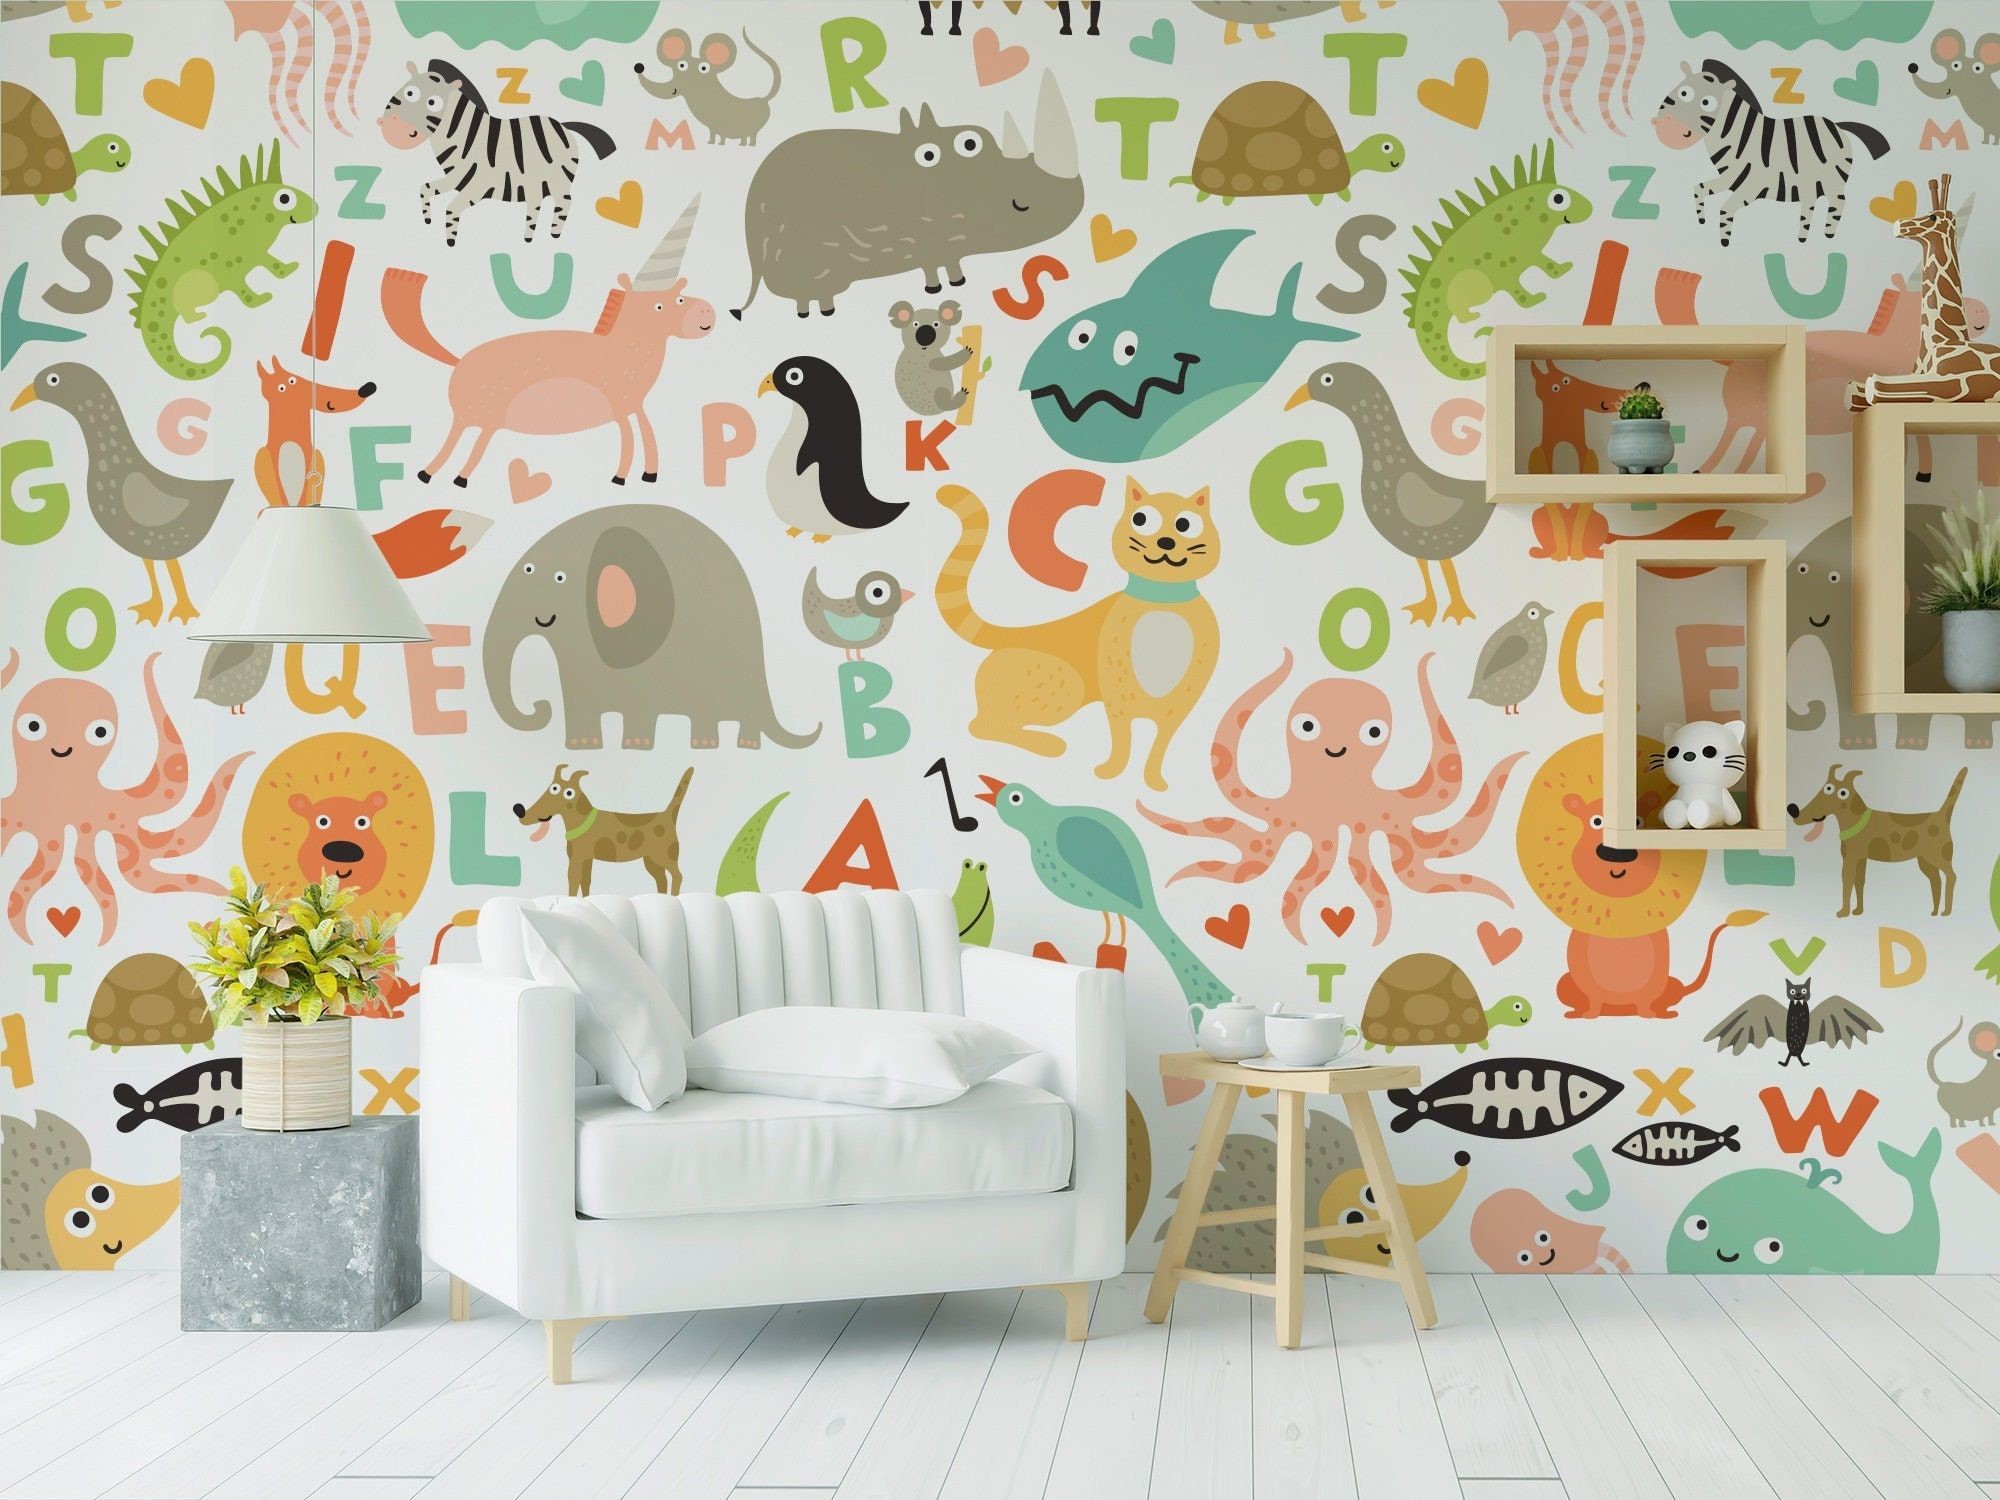 نقاشی‌های آموزشی روی دیوارها، یکی از ایده‌های بسیار خلاقانه و مفید در طراحی اتاق کودک است.